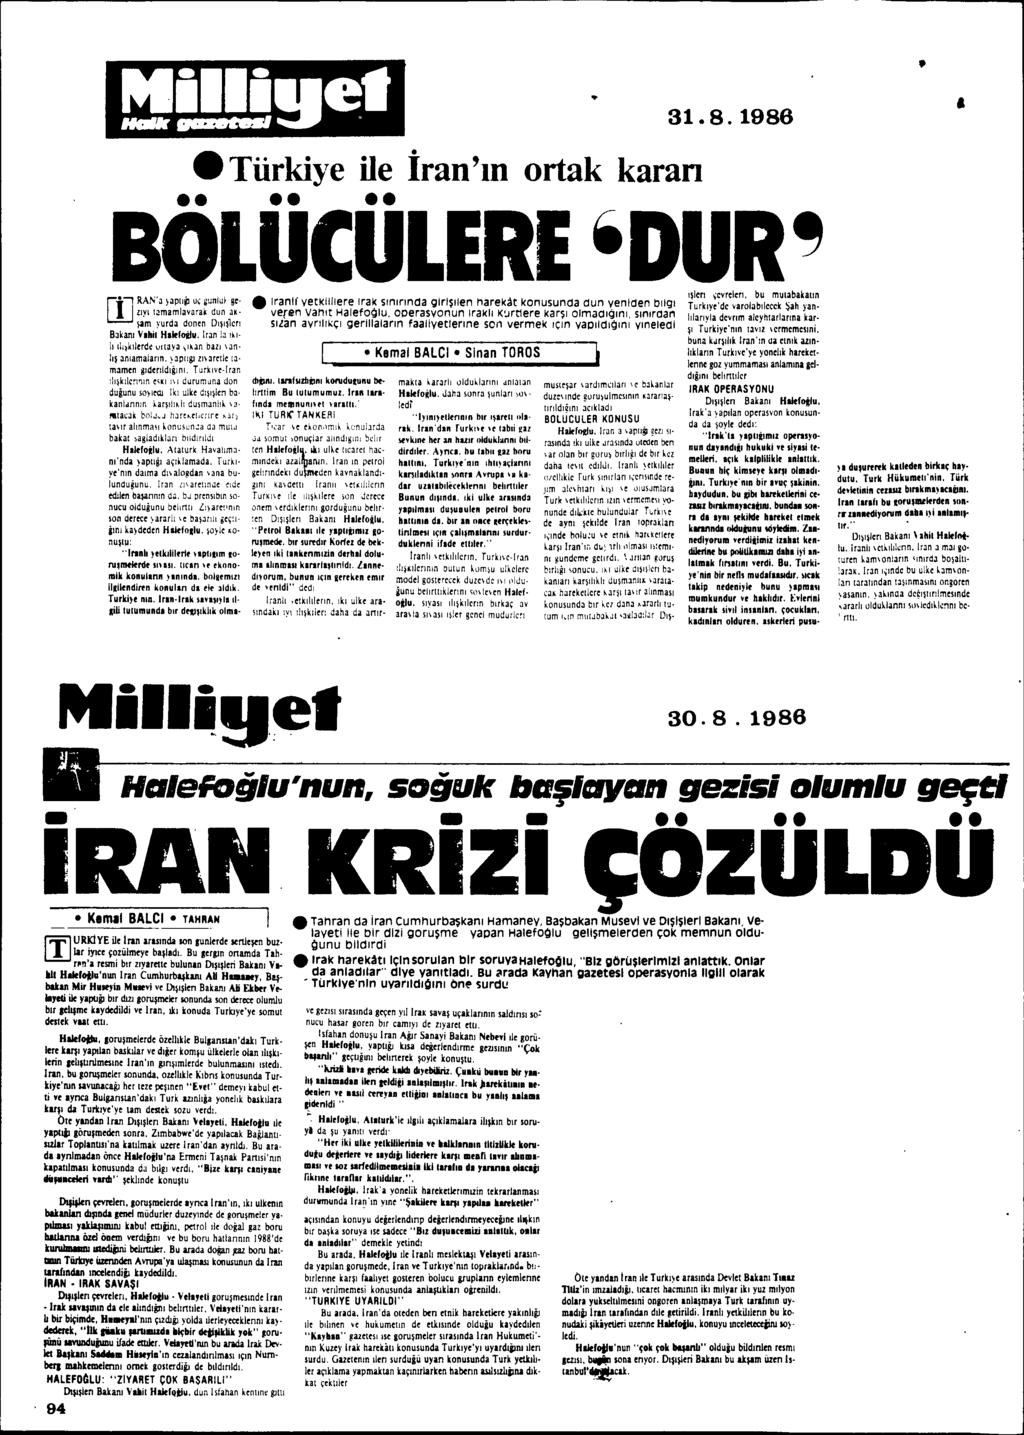 etürkiye ile iran'.n ortak karan 31.8.1986 BÖLÜCÜLERE.